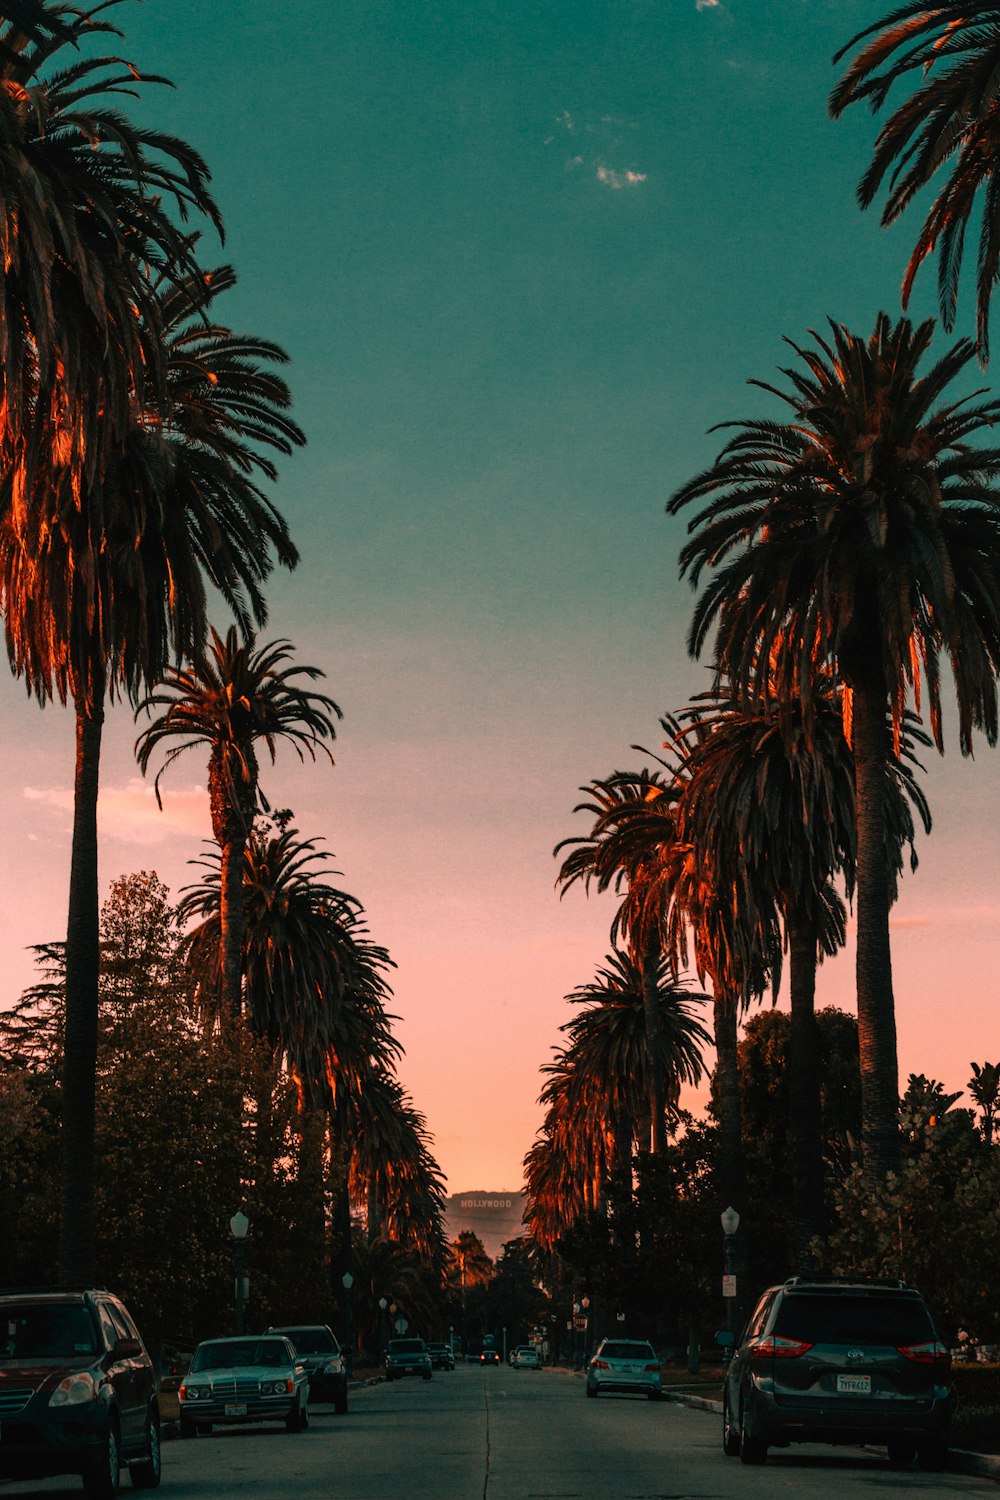 Hình nền Los Angeles: Los Angeles là một thành phố nổi tiếng và rực rỡ với những thắp sáng lung linh. Hãy cùng chiêm ngưỡng bức hình nền Los Angeles đầy ấn tượng này để trải nghiệm cảm giác bình yên nhưng cũng đầy sức sống của thành phố này.